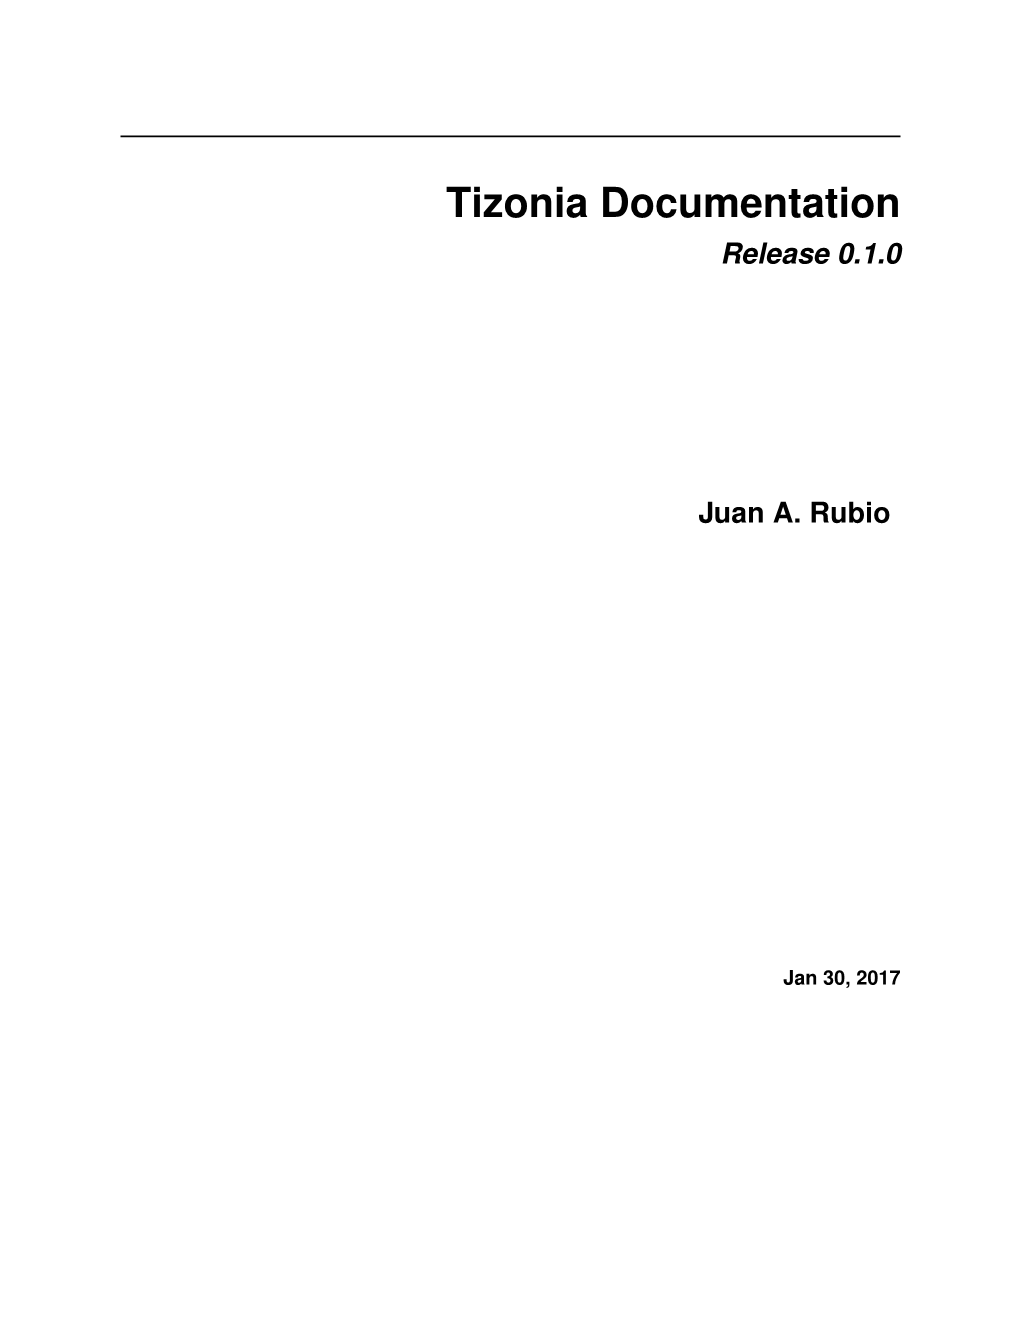 Tizonia Documentation Release 0.1.0